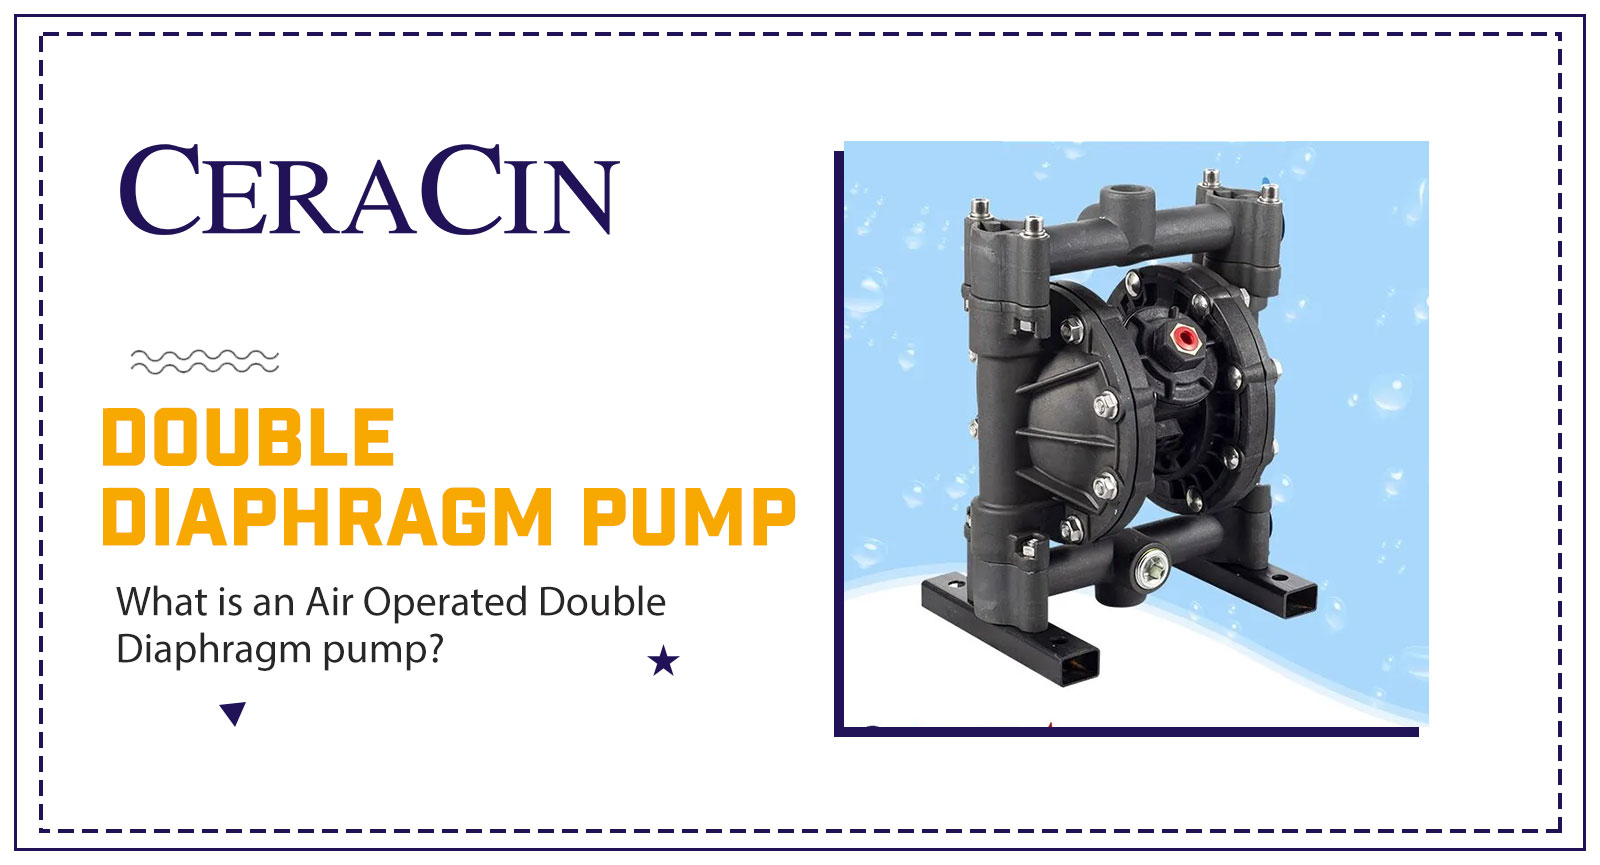 Double Diaphragm Pump, Ceracin